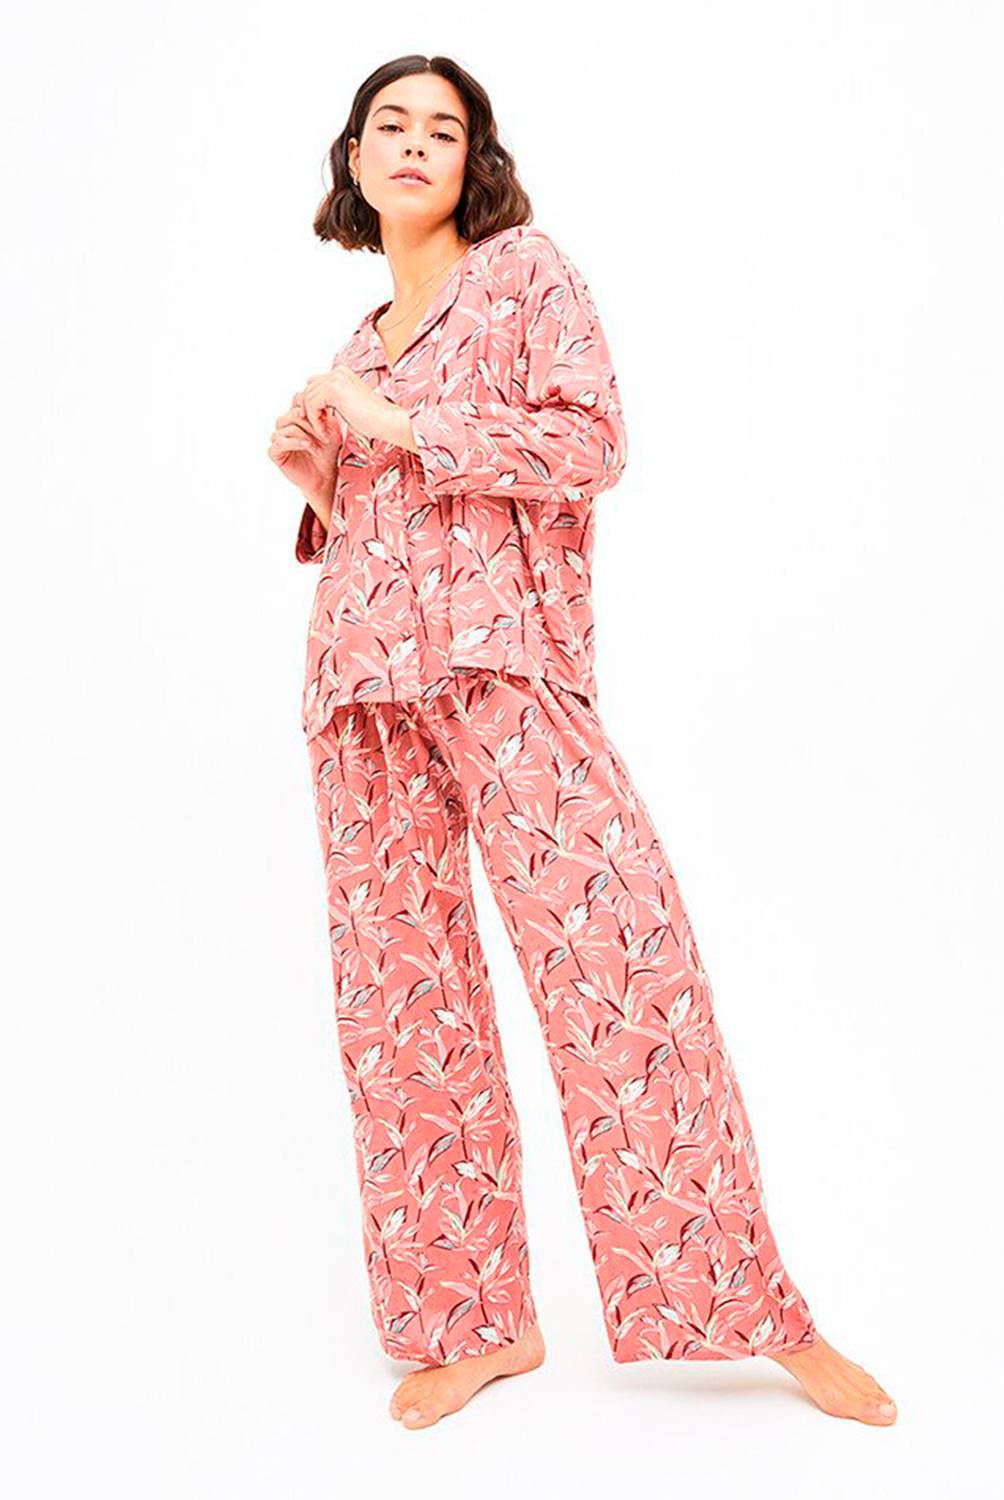 LOUNGE - Pijama Mujer Conjunto Camisa Hojas Rosado